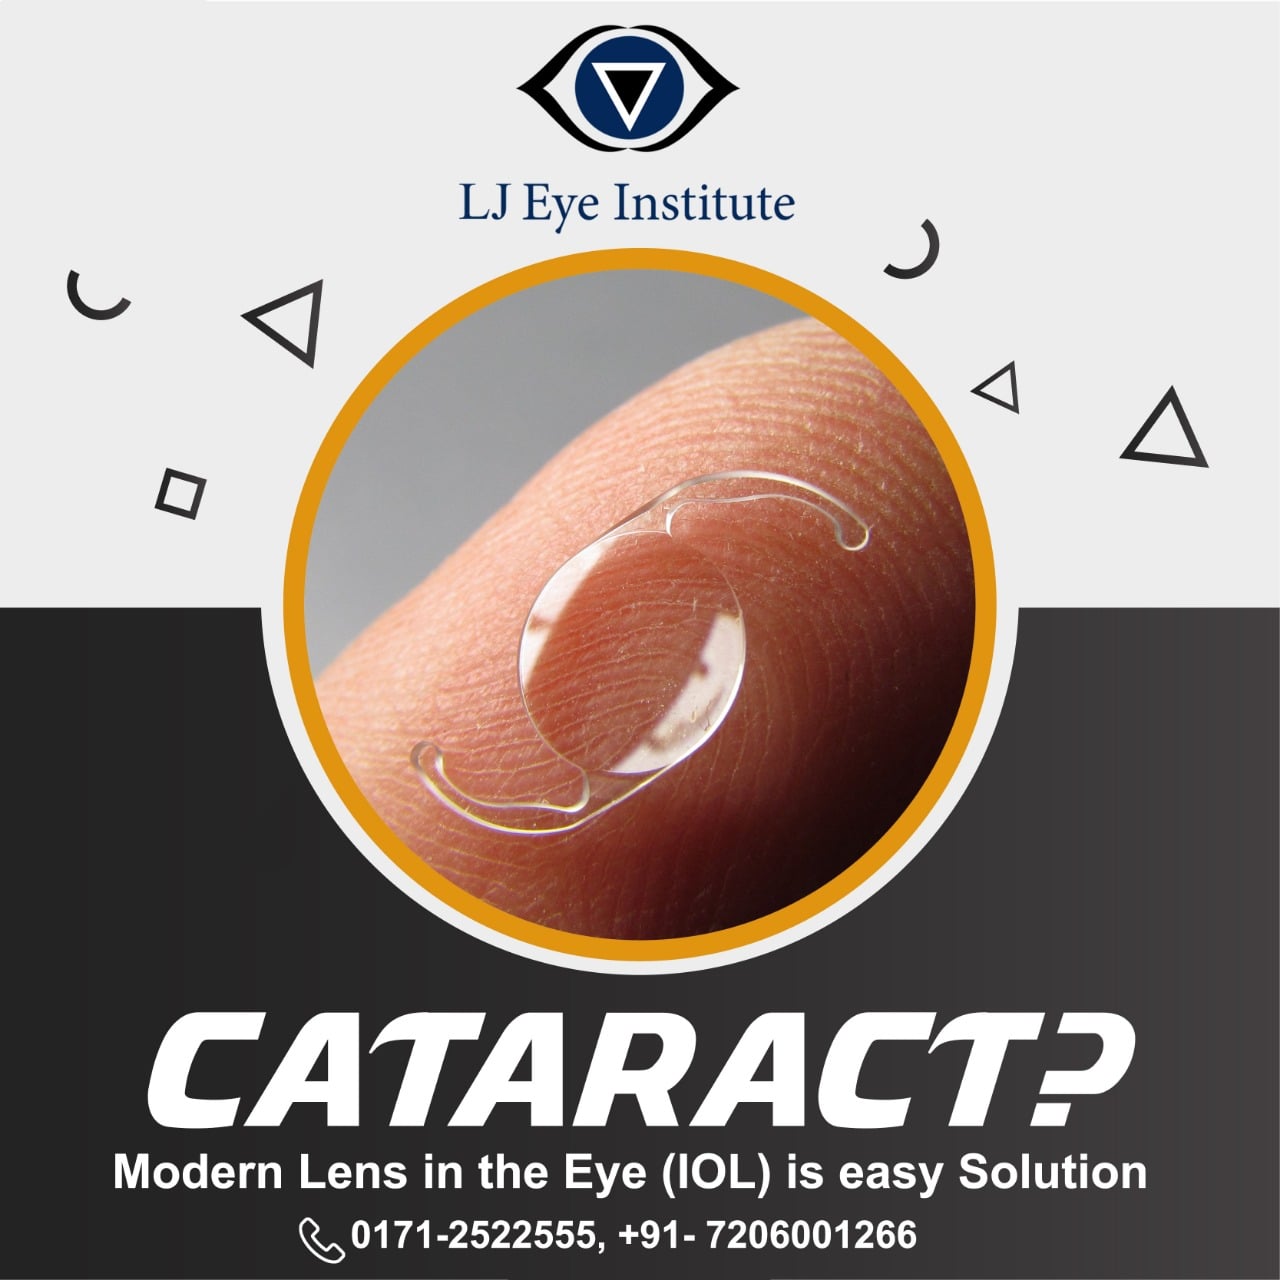 Eye Hospital with best cataract lenses in Haryana | LJ Eye Institute